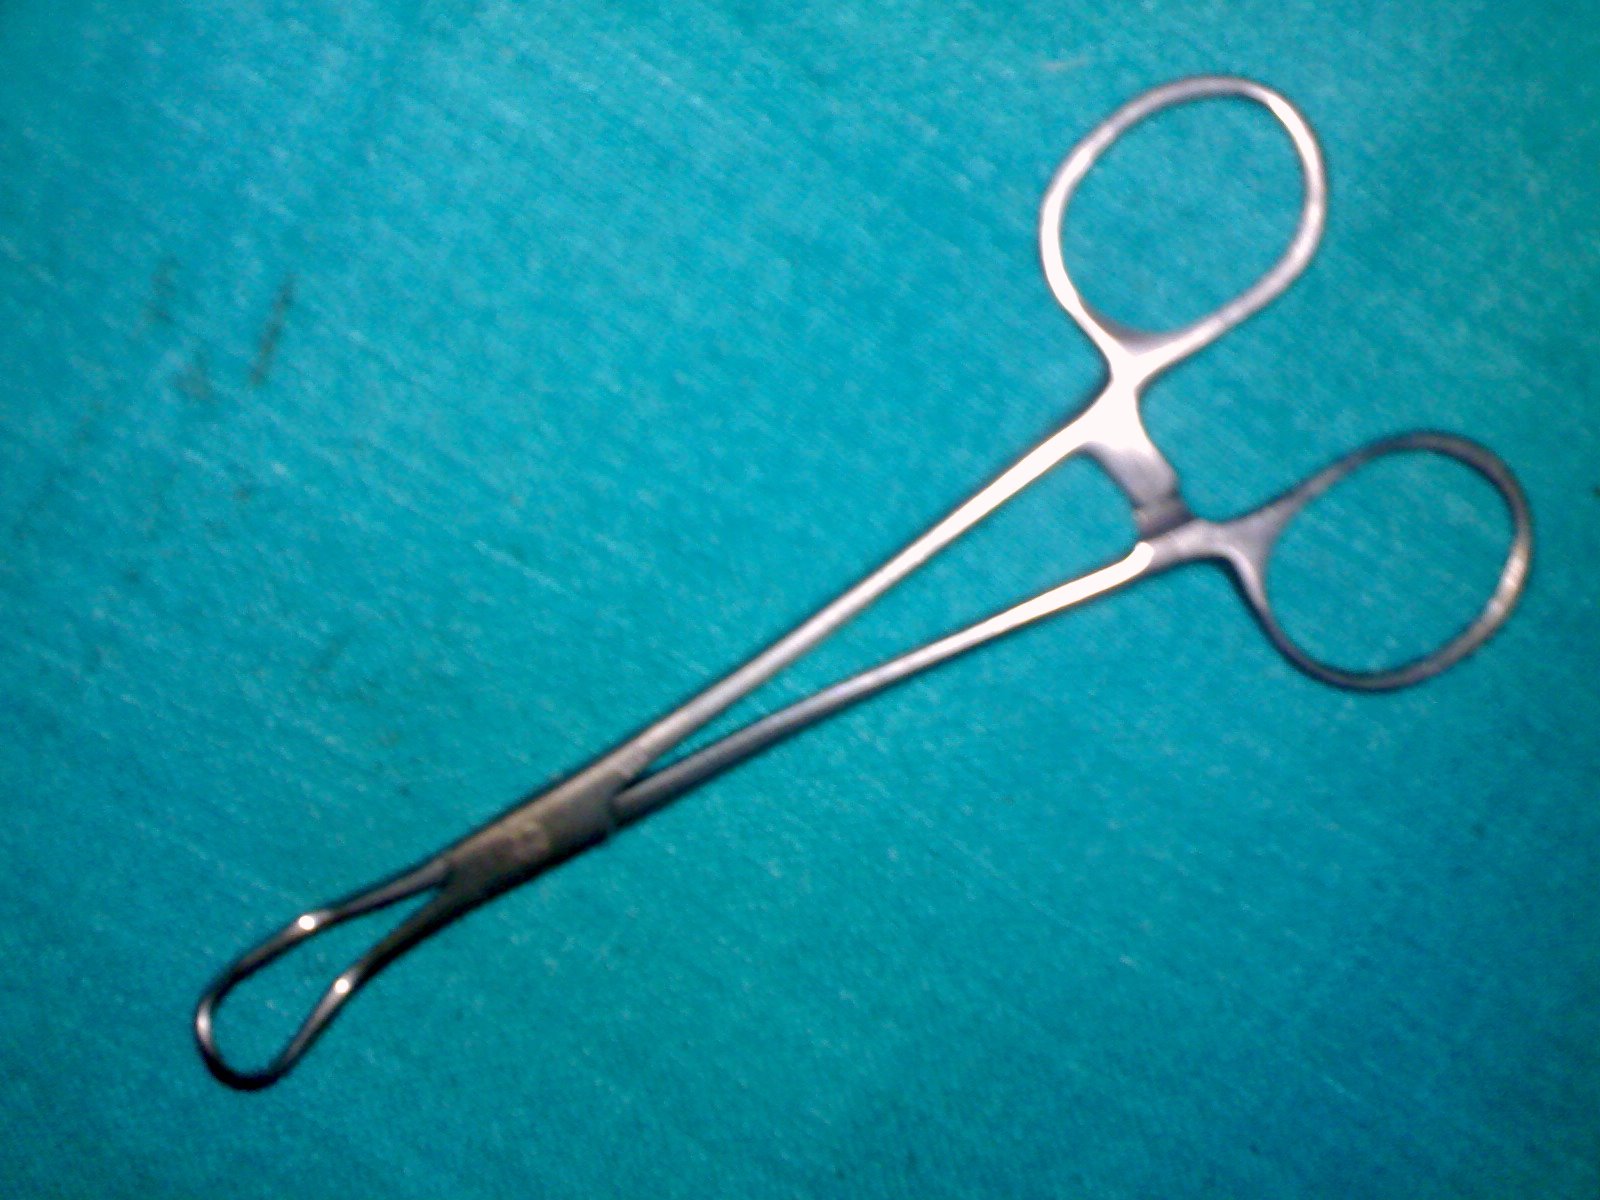 File:Medical Instrument Linen holding forceps.jpg - Wikimedia Commons